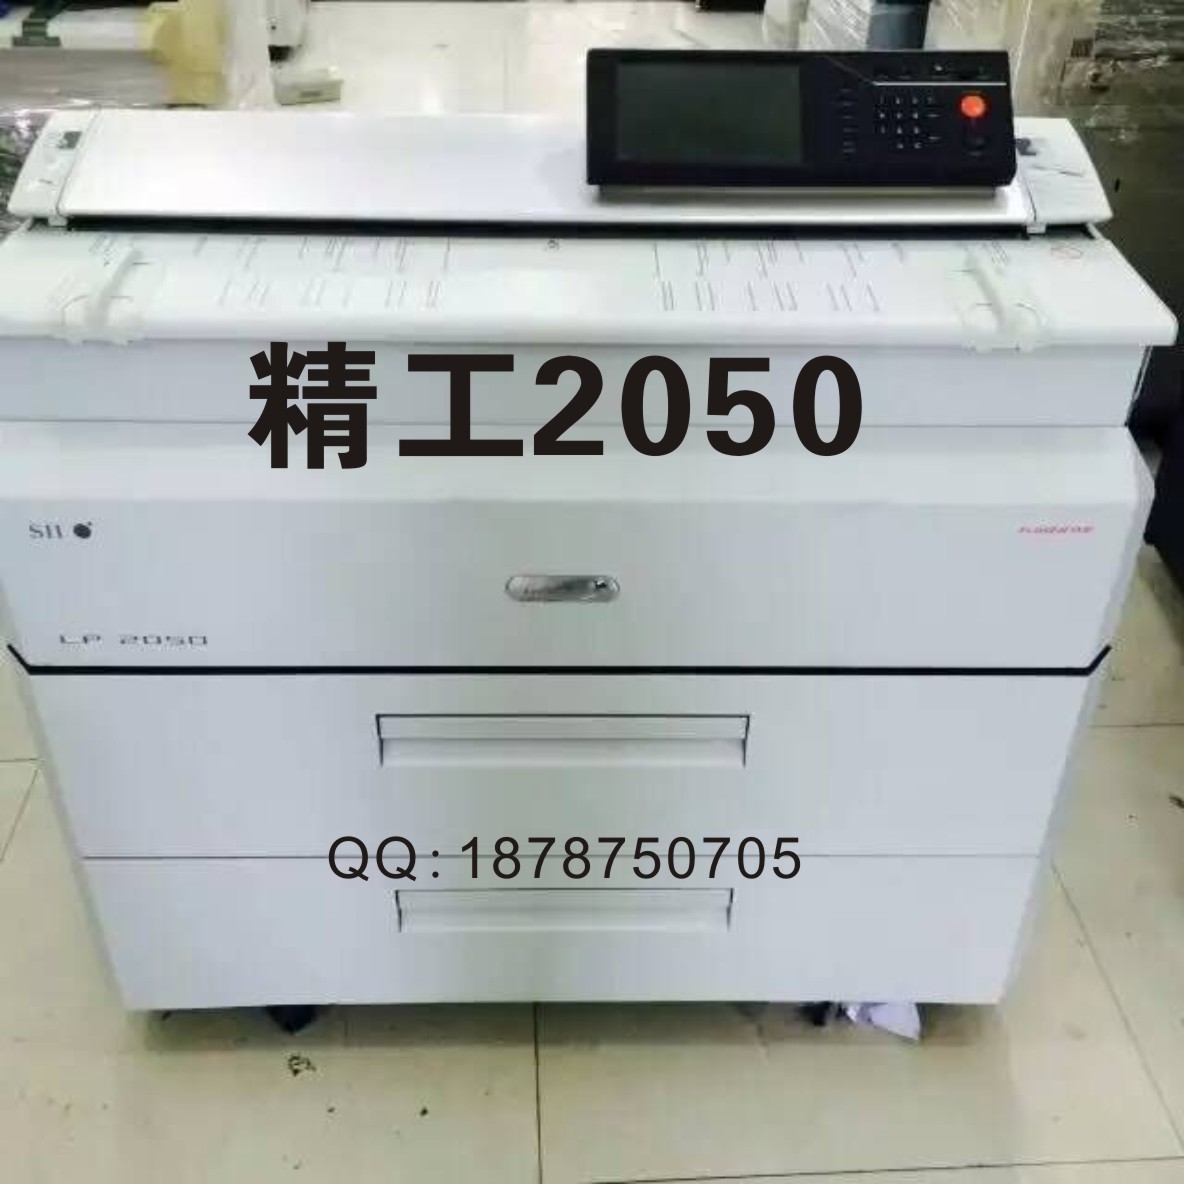 精工LP-2050工程复印机 A0激光蓝图打印机 CAD大图机 彩色扫描